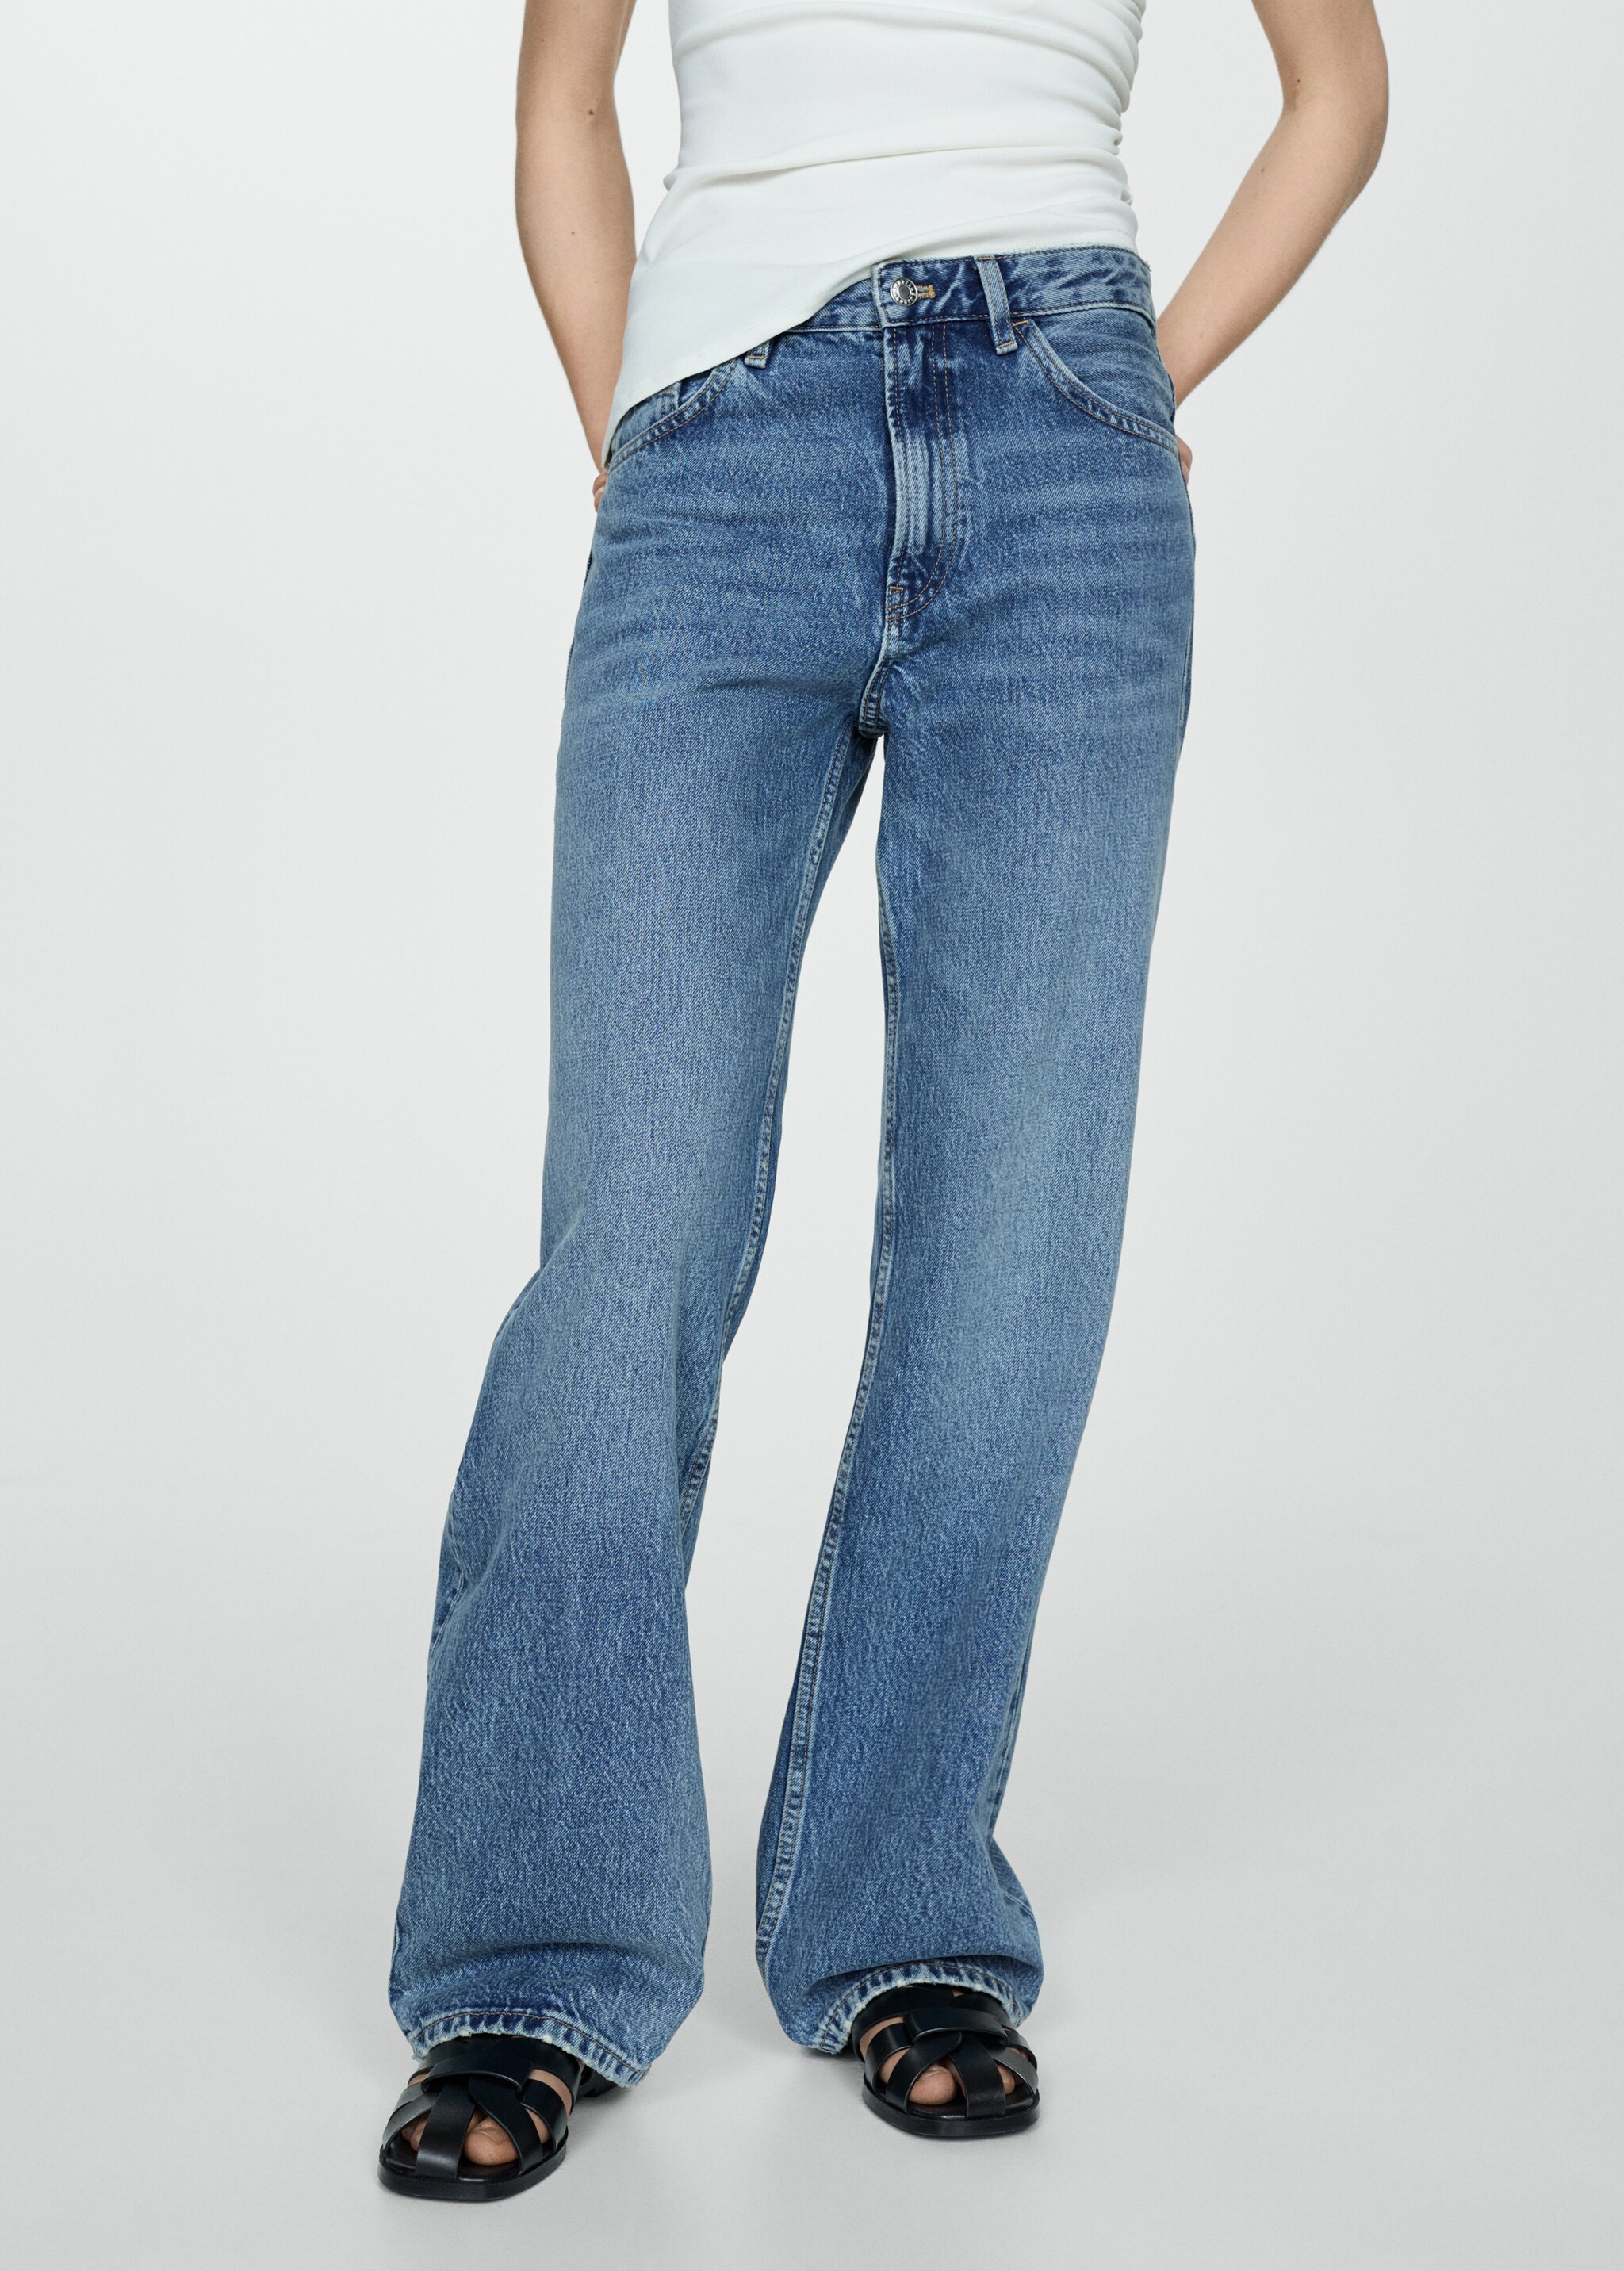 Прямые джинсы с посадкой на талии - Средний план